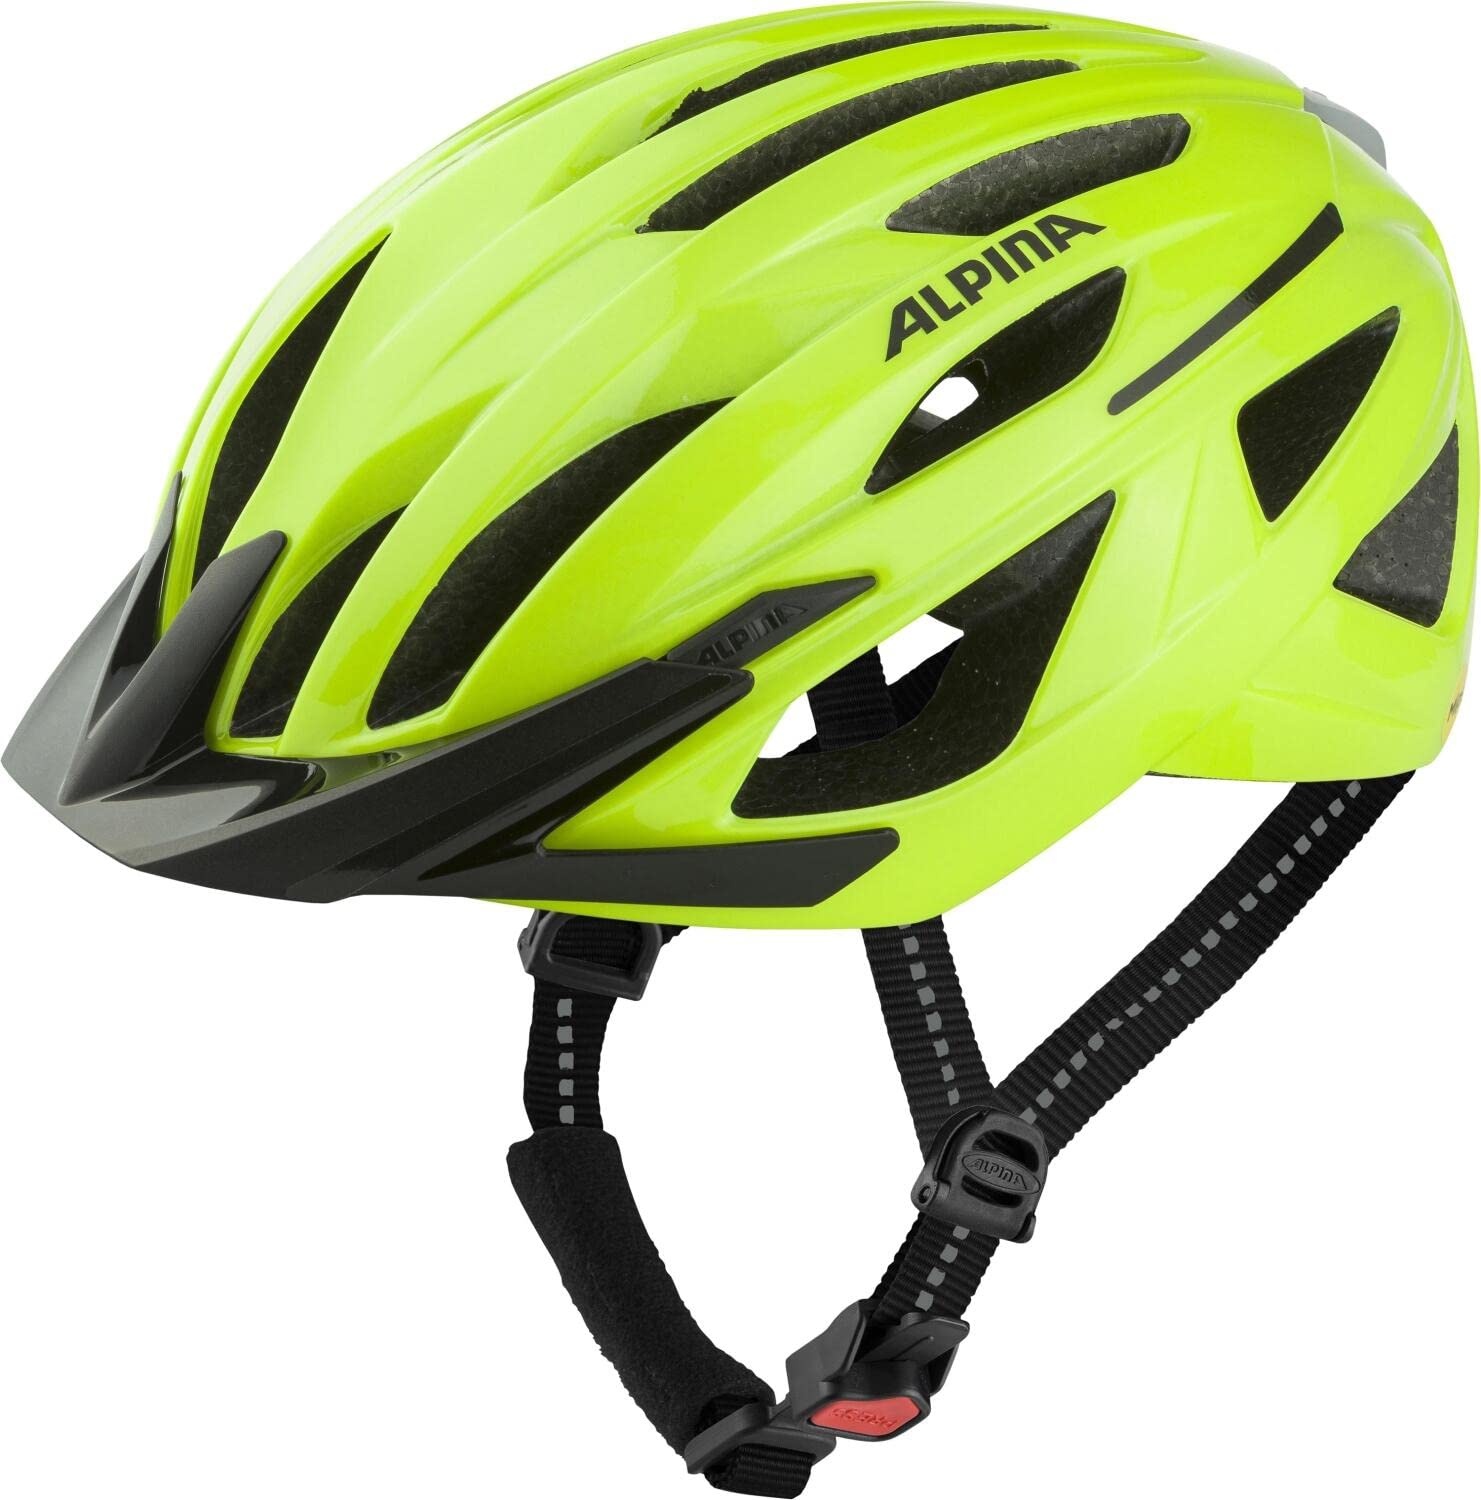 ALPINA GENT MIPS - Reflektierender, Optimal Sichtbarer & Sicherer MIPS Fahrradhelm Mit Fliegennetz Für Erwachsene, be visible gloss, 51-56 cm